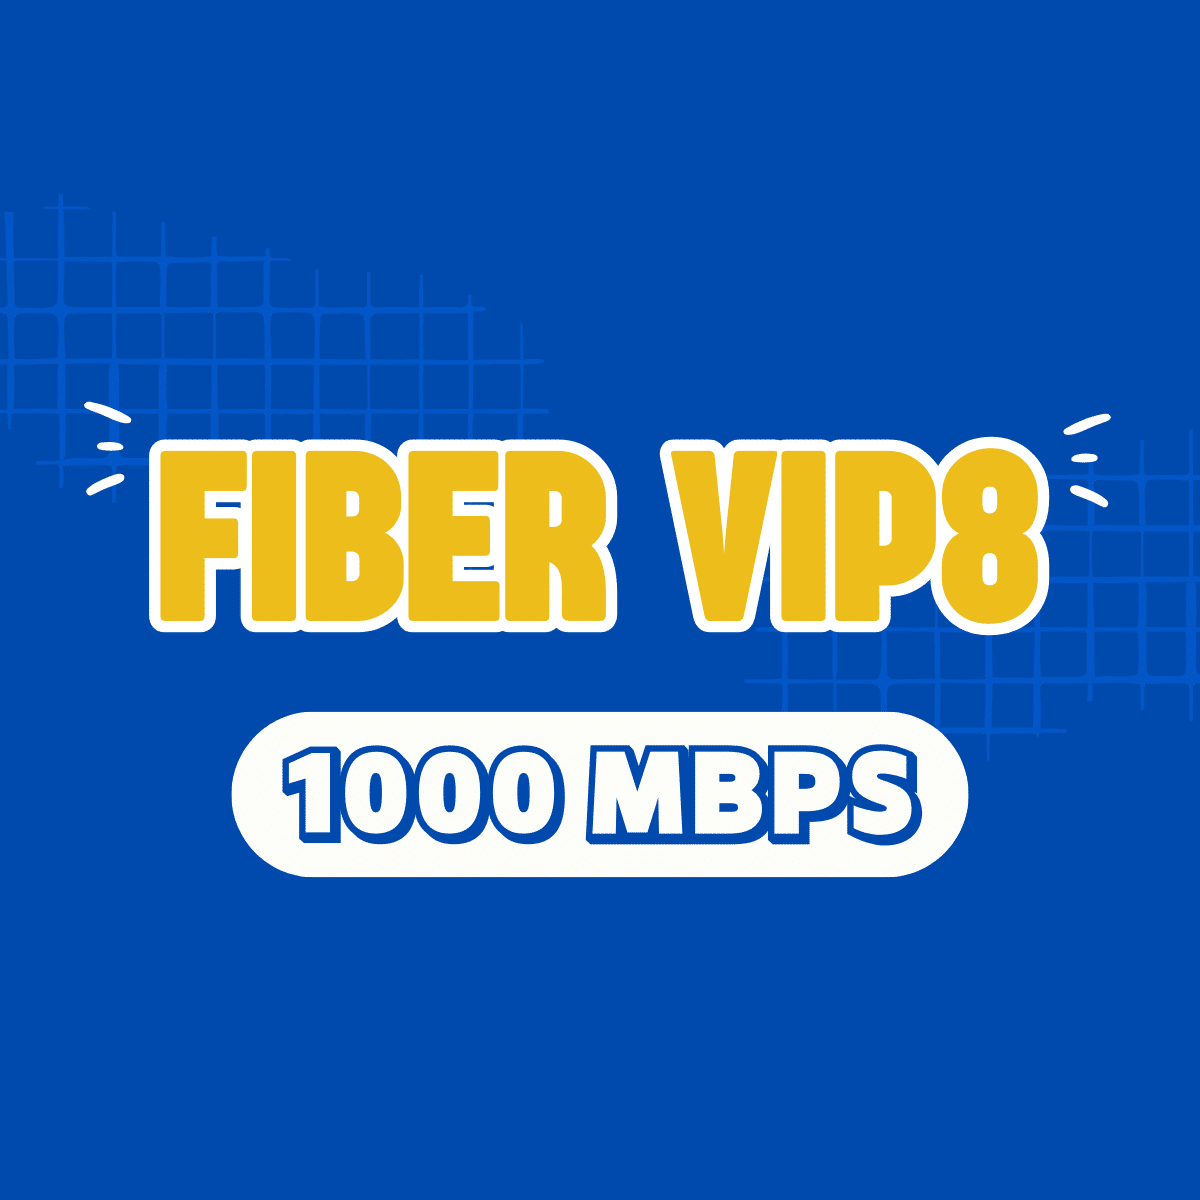 Fiber Vip 8, fibervip8